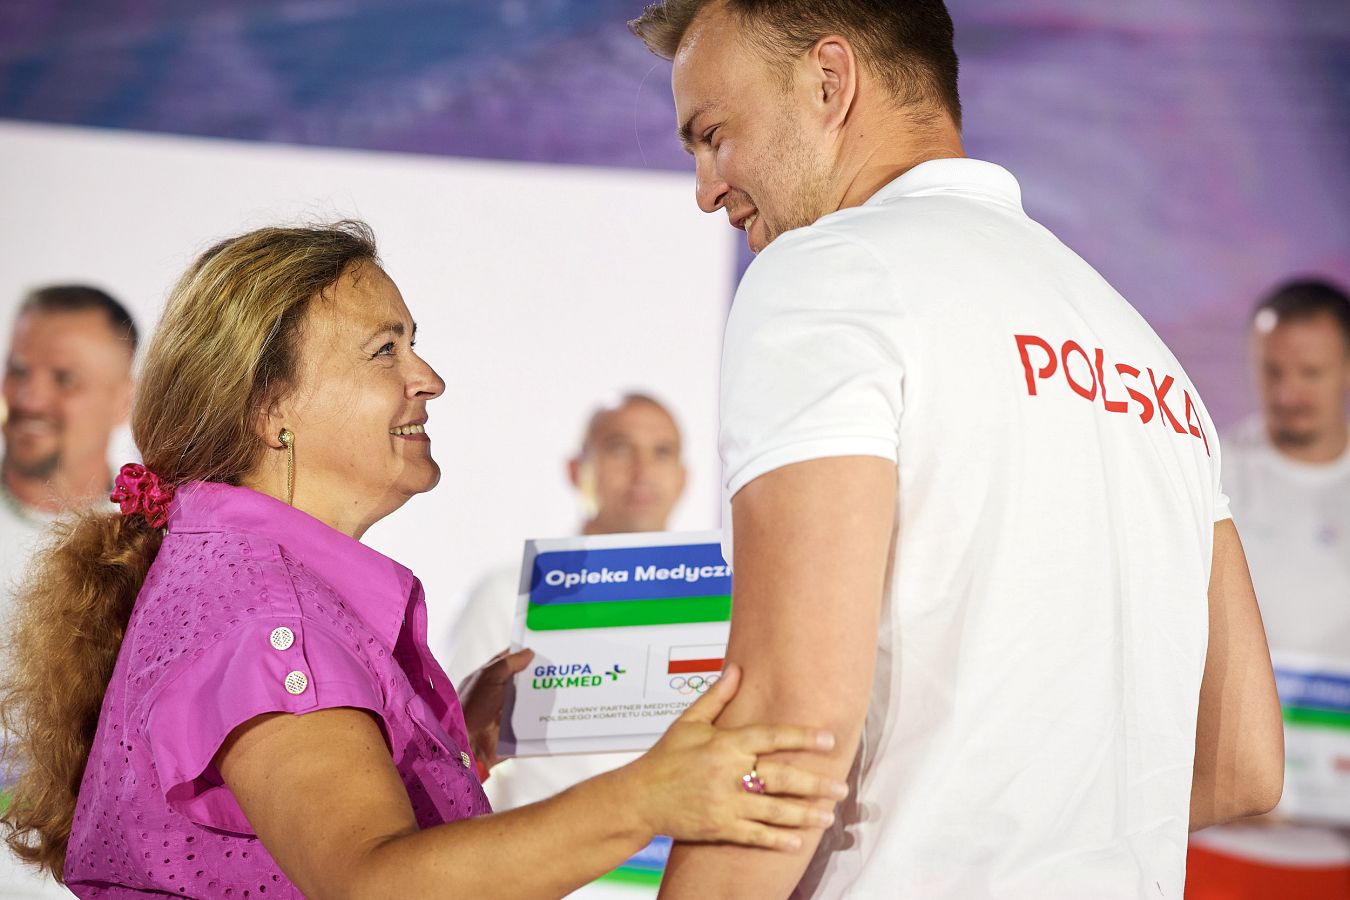 Medaliści III Igrzysk Europejskich 2023 nagrodzeni! Marka Ball wśród partnerów polskiego sportu